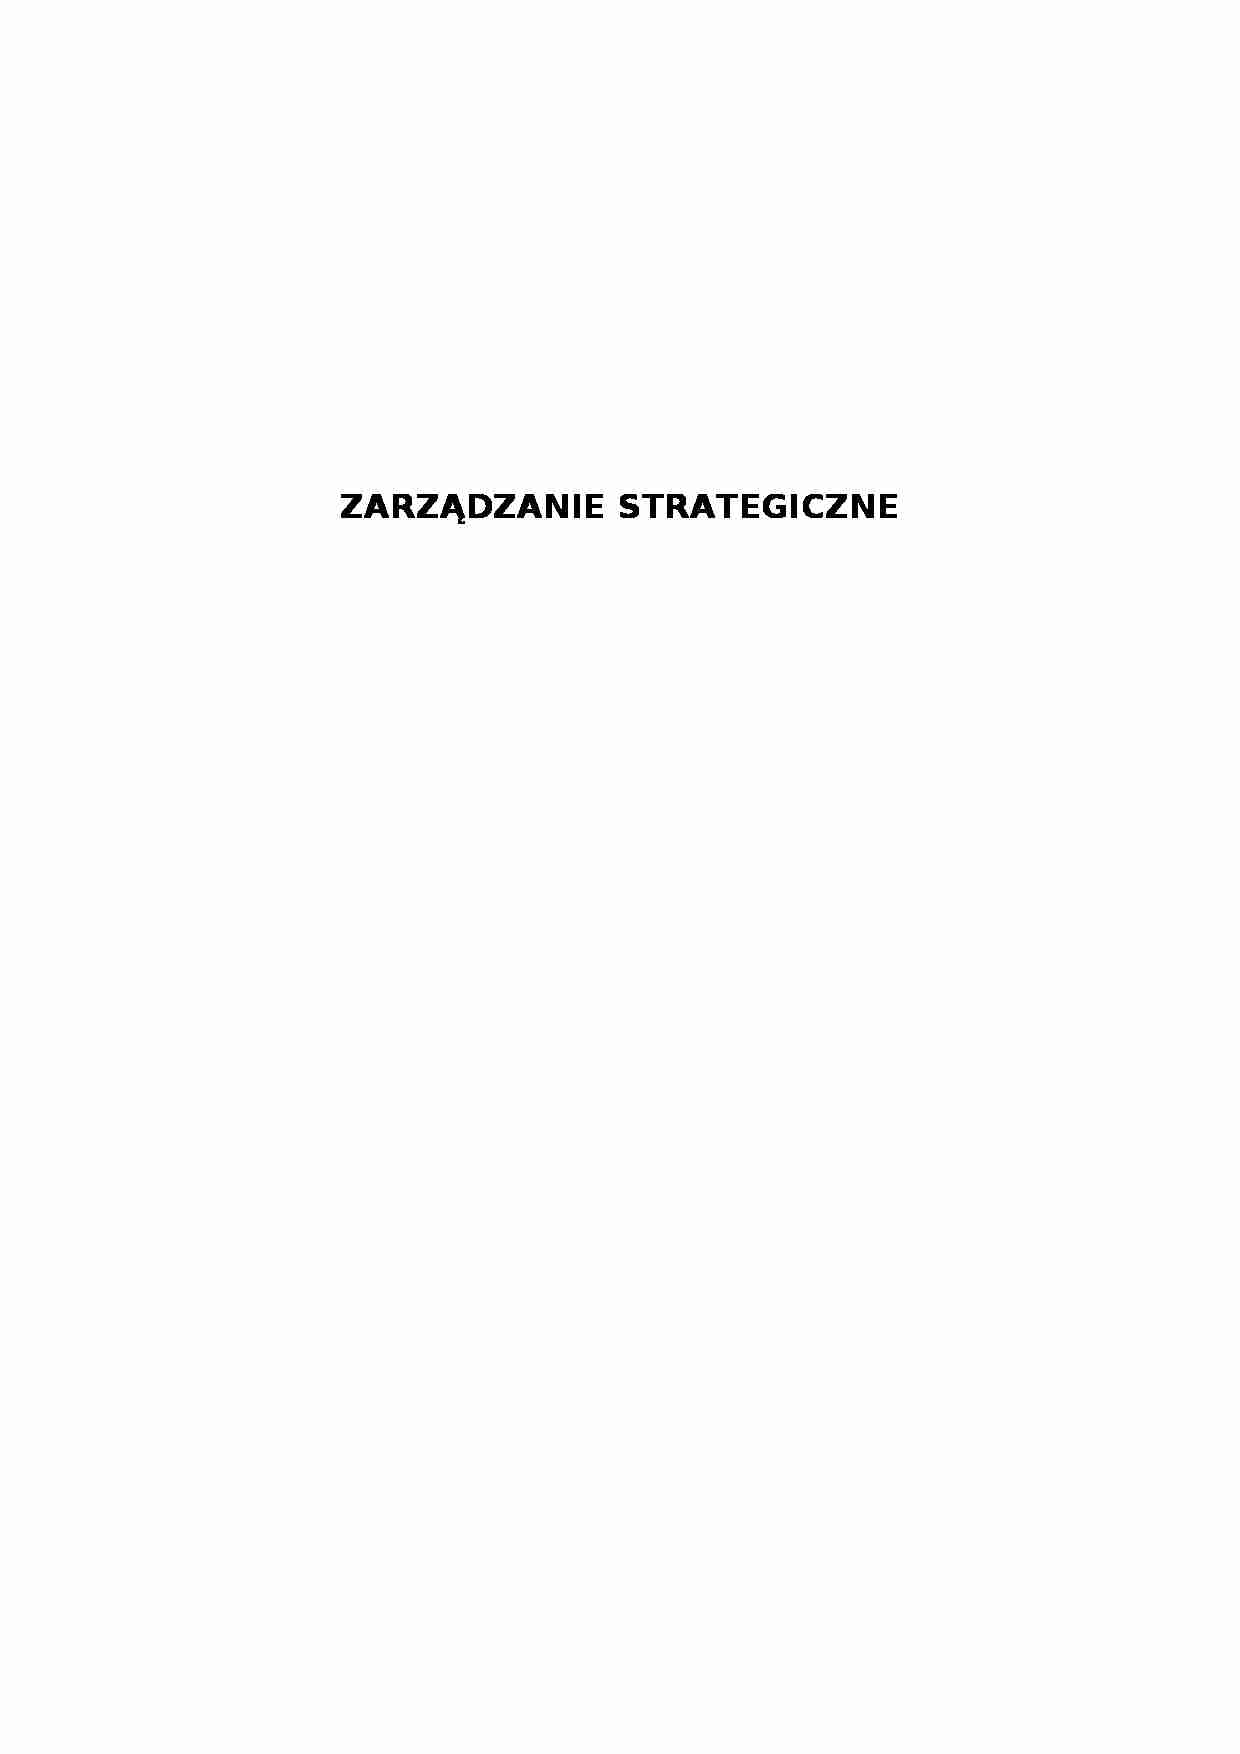 Zarządzane strategiczne cz 2 - strona 1